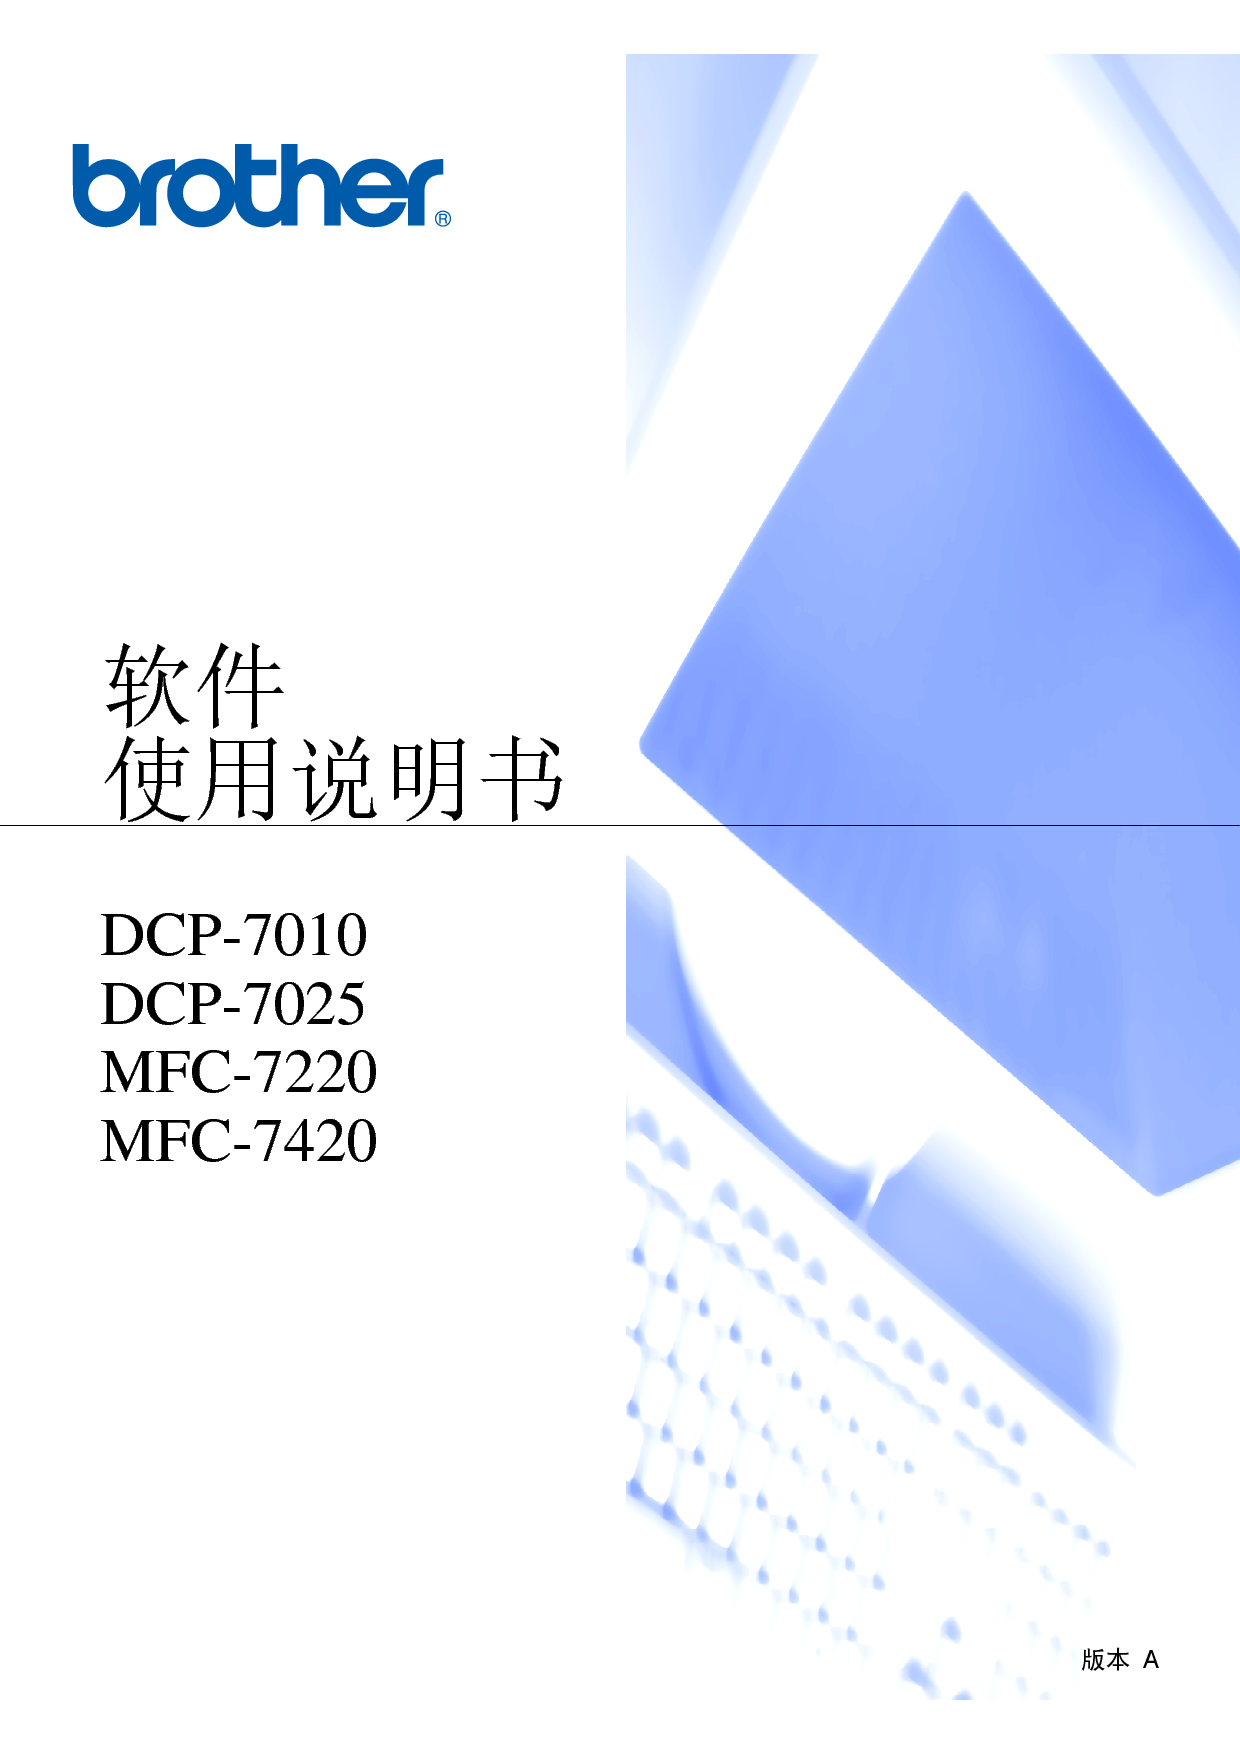 兄弟 Brother DCP-7010, MFC-7220 软件 使用说明书 封面